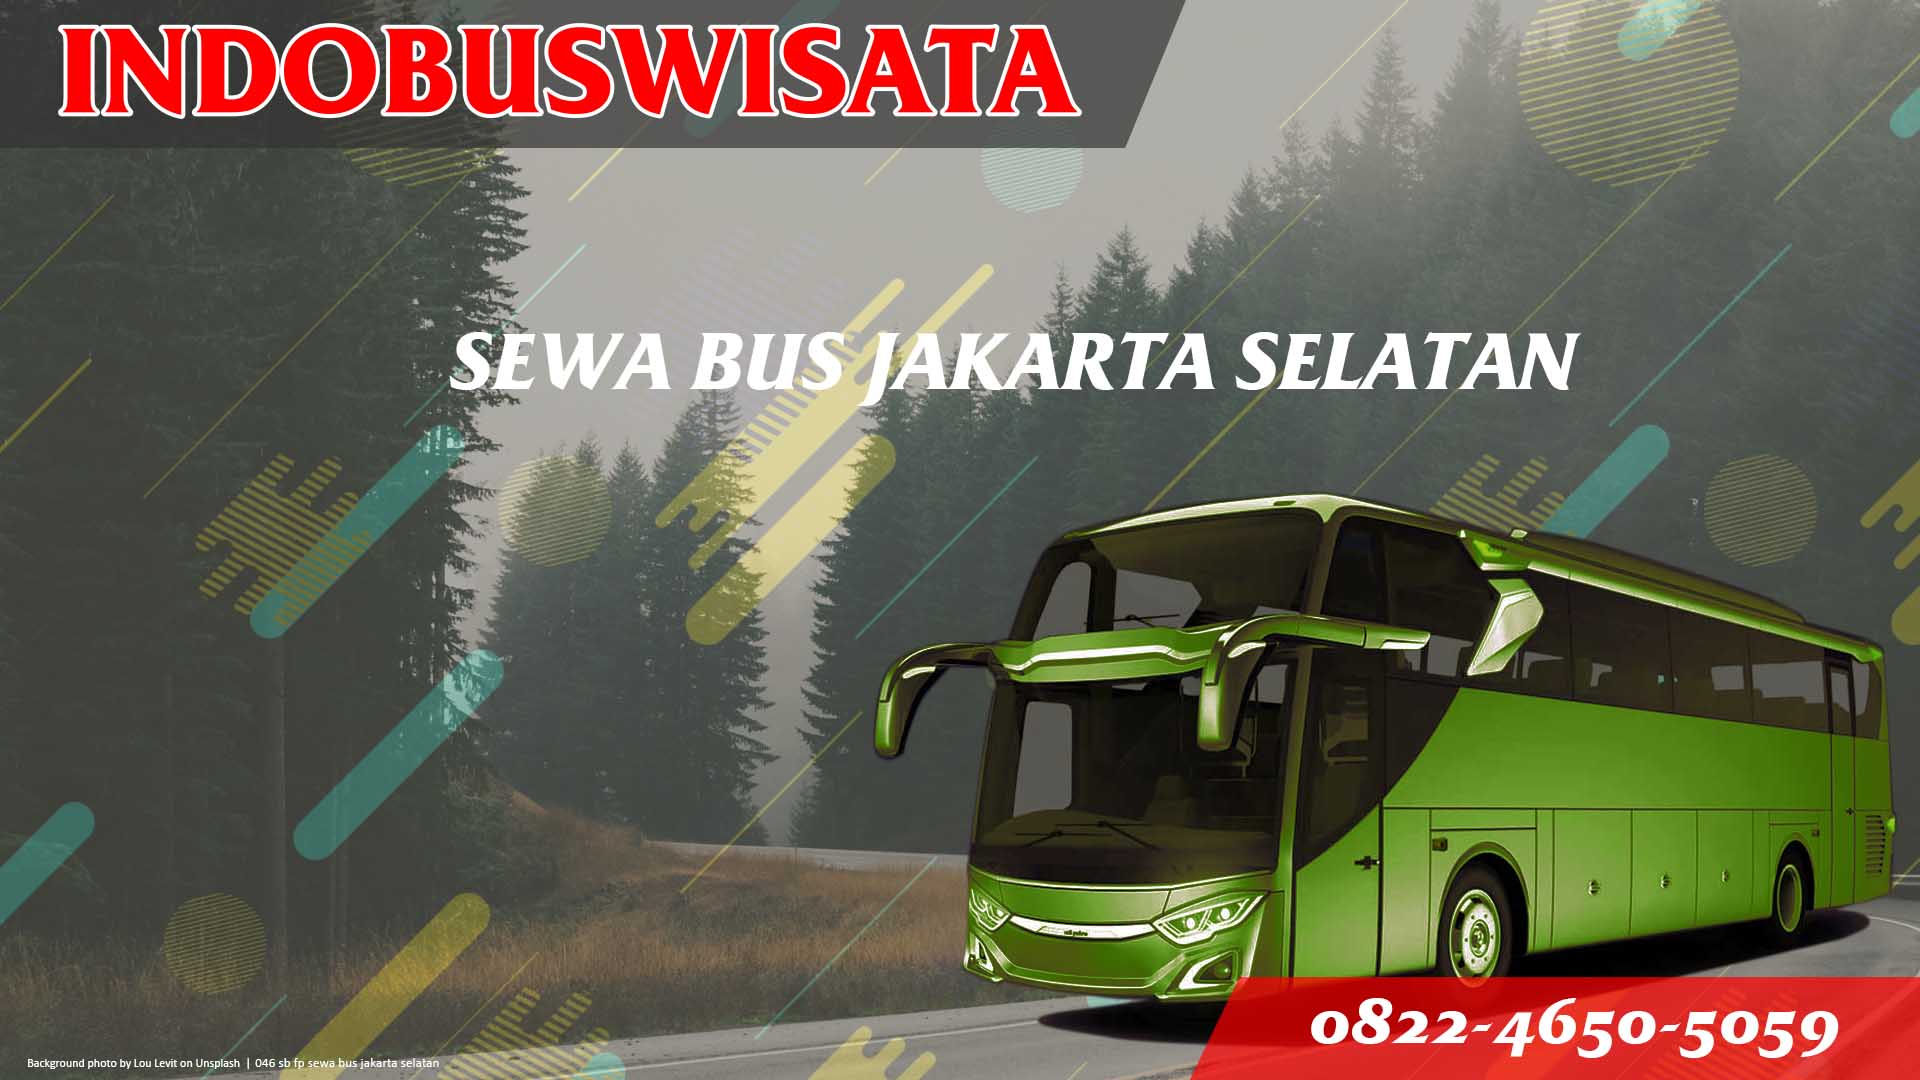 046 Sb Fp Sewa Bus Jakarta Selatan Jb 3 Hdd Indobuswisata